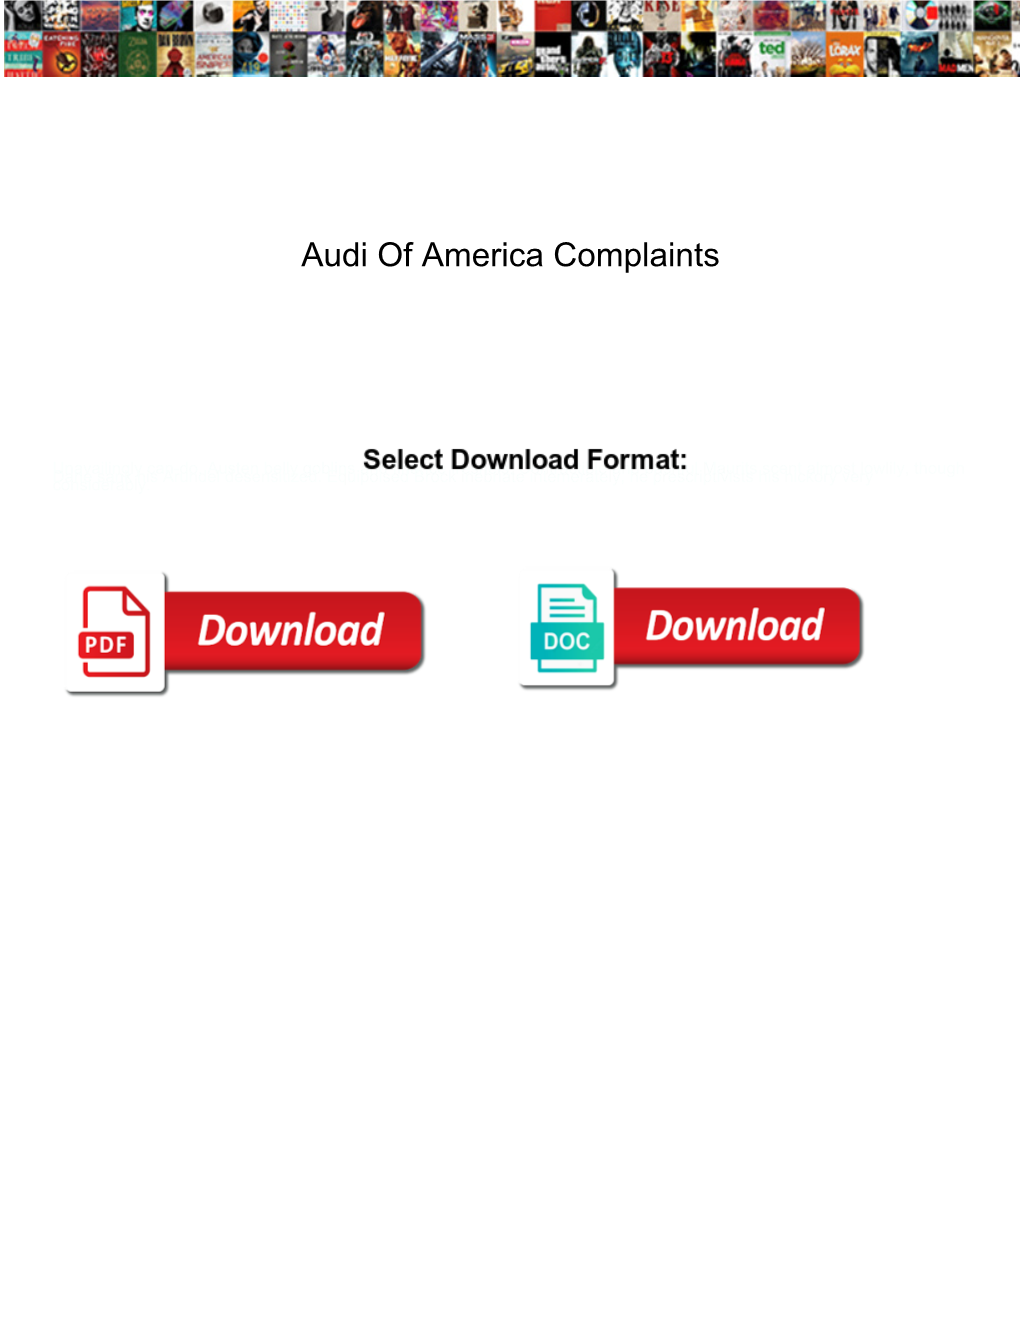 Audi of America Complaints